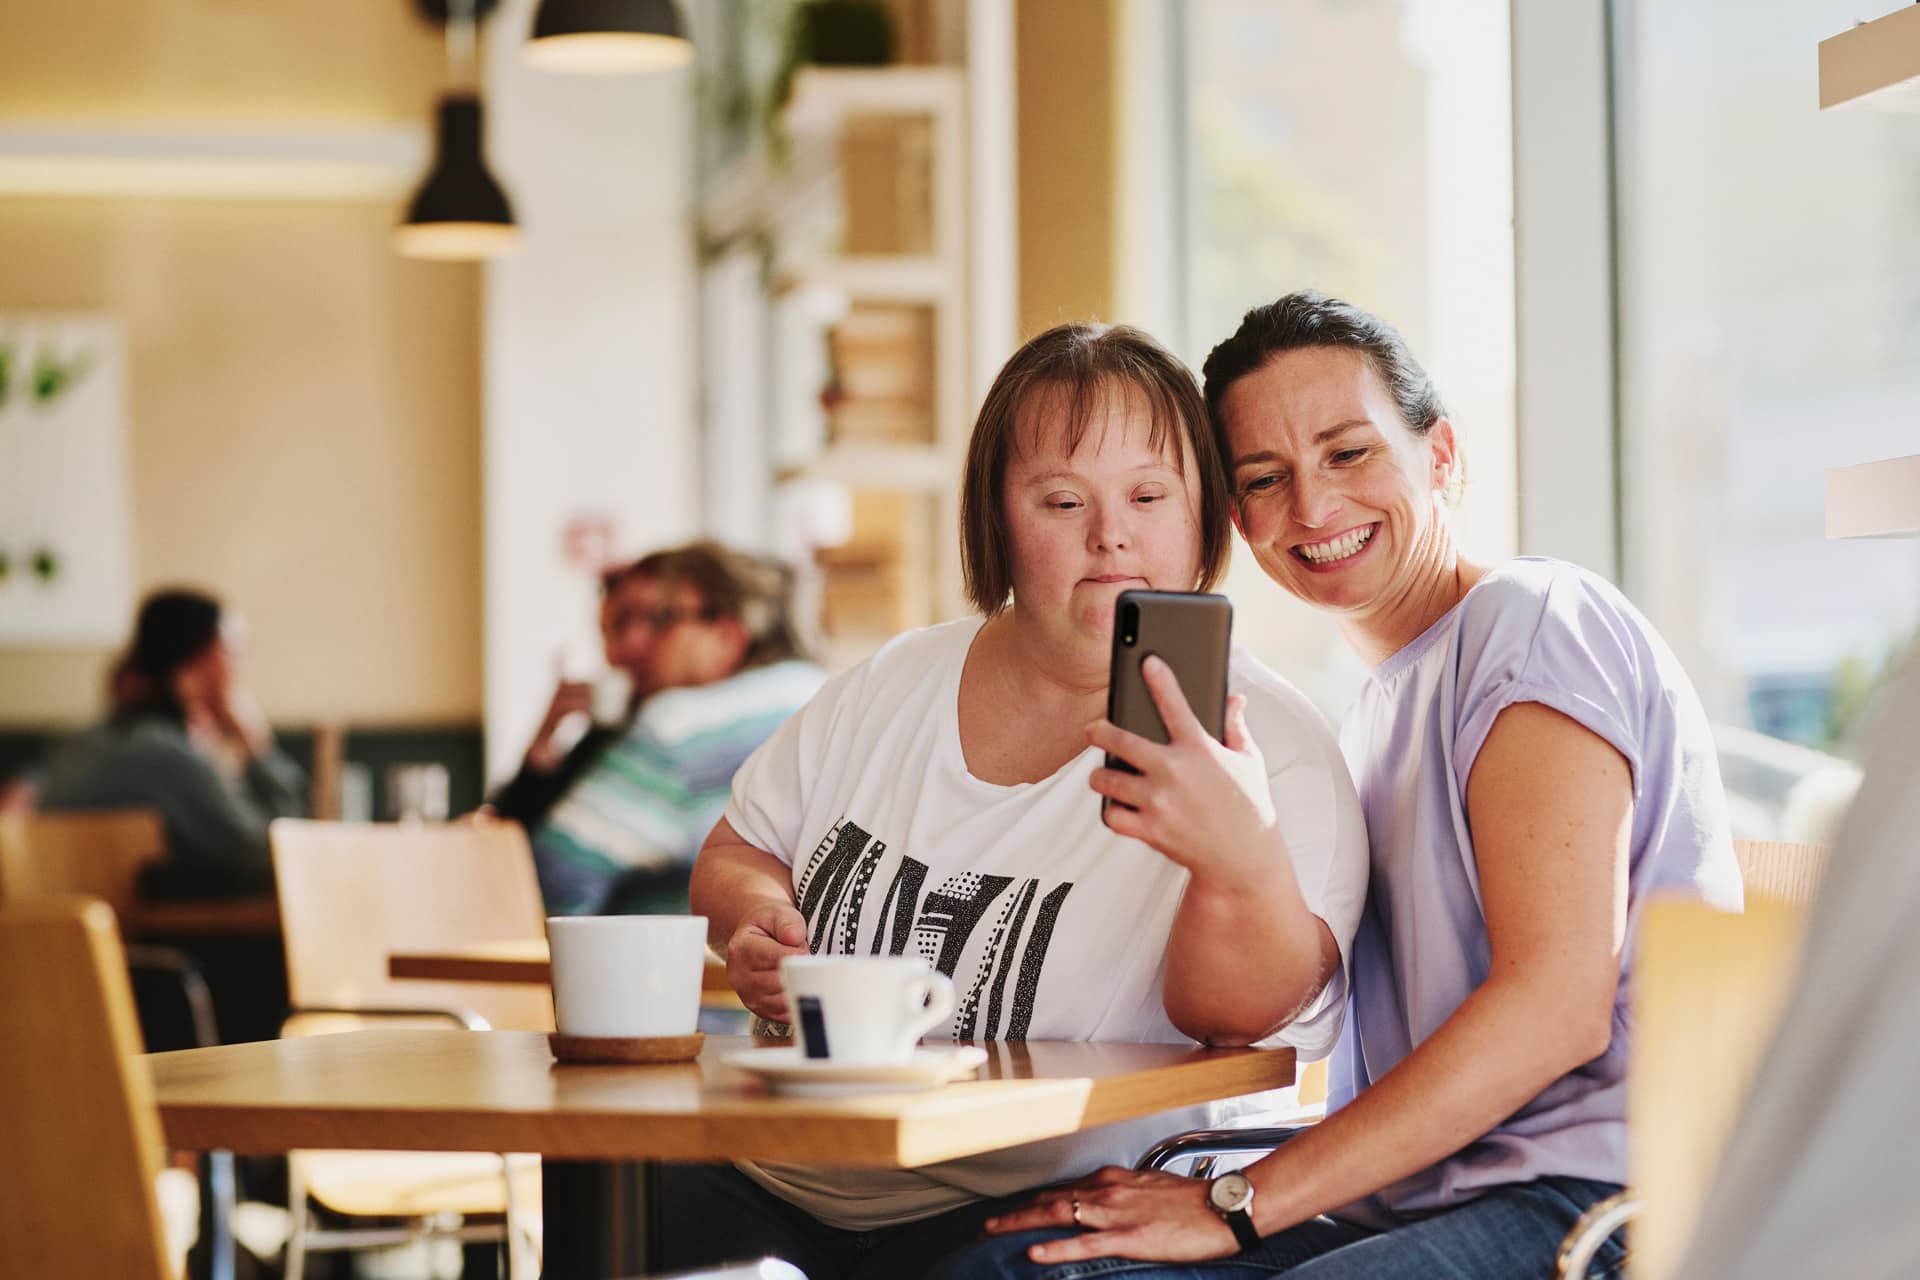 Frau mit Downsyndrom mit Freizeitassistentin in Café, machen Selfie von sich